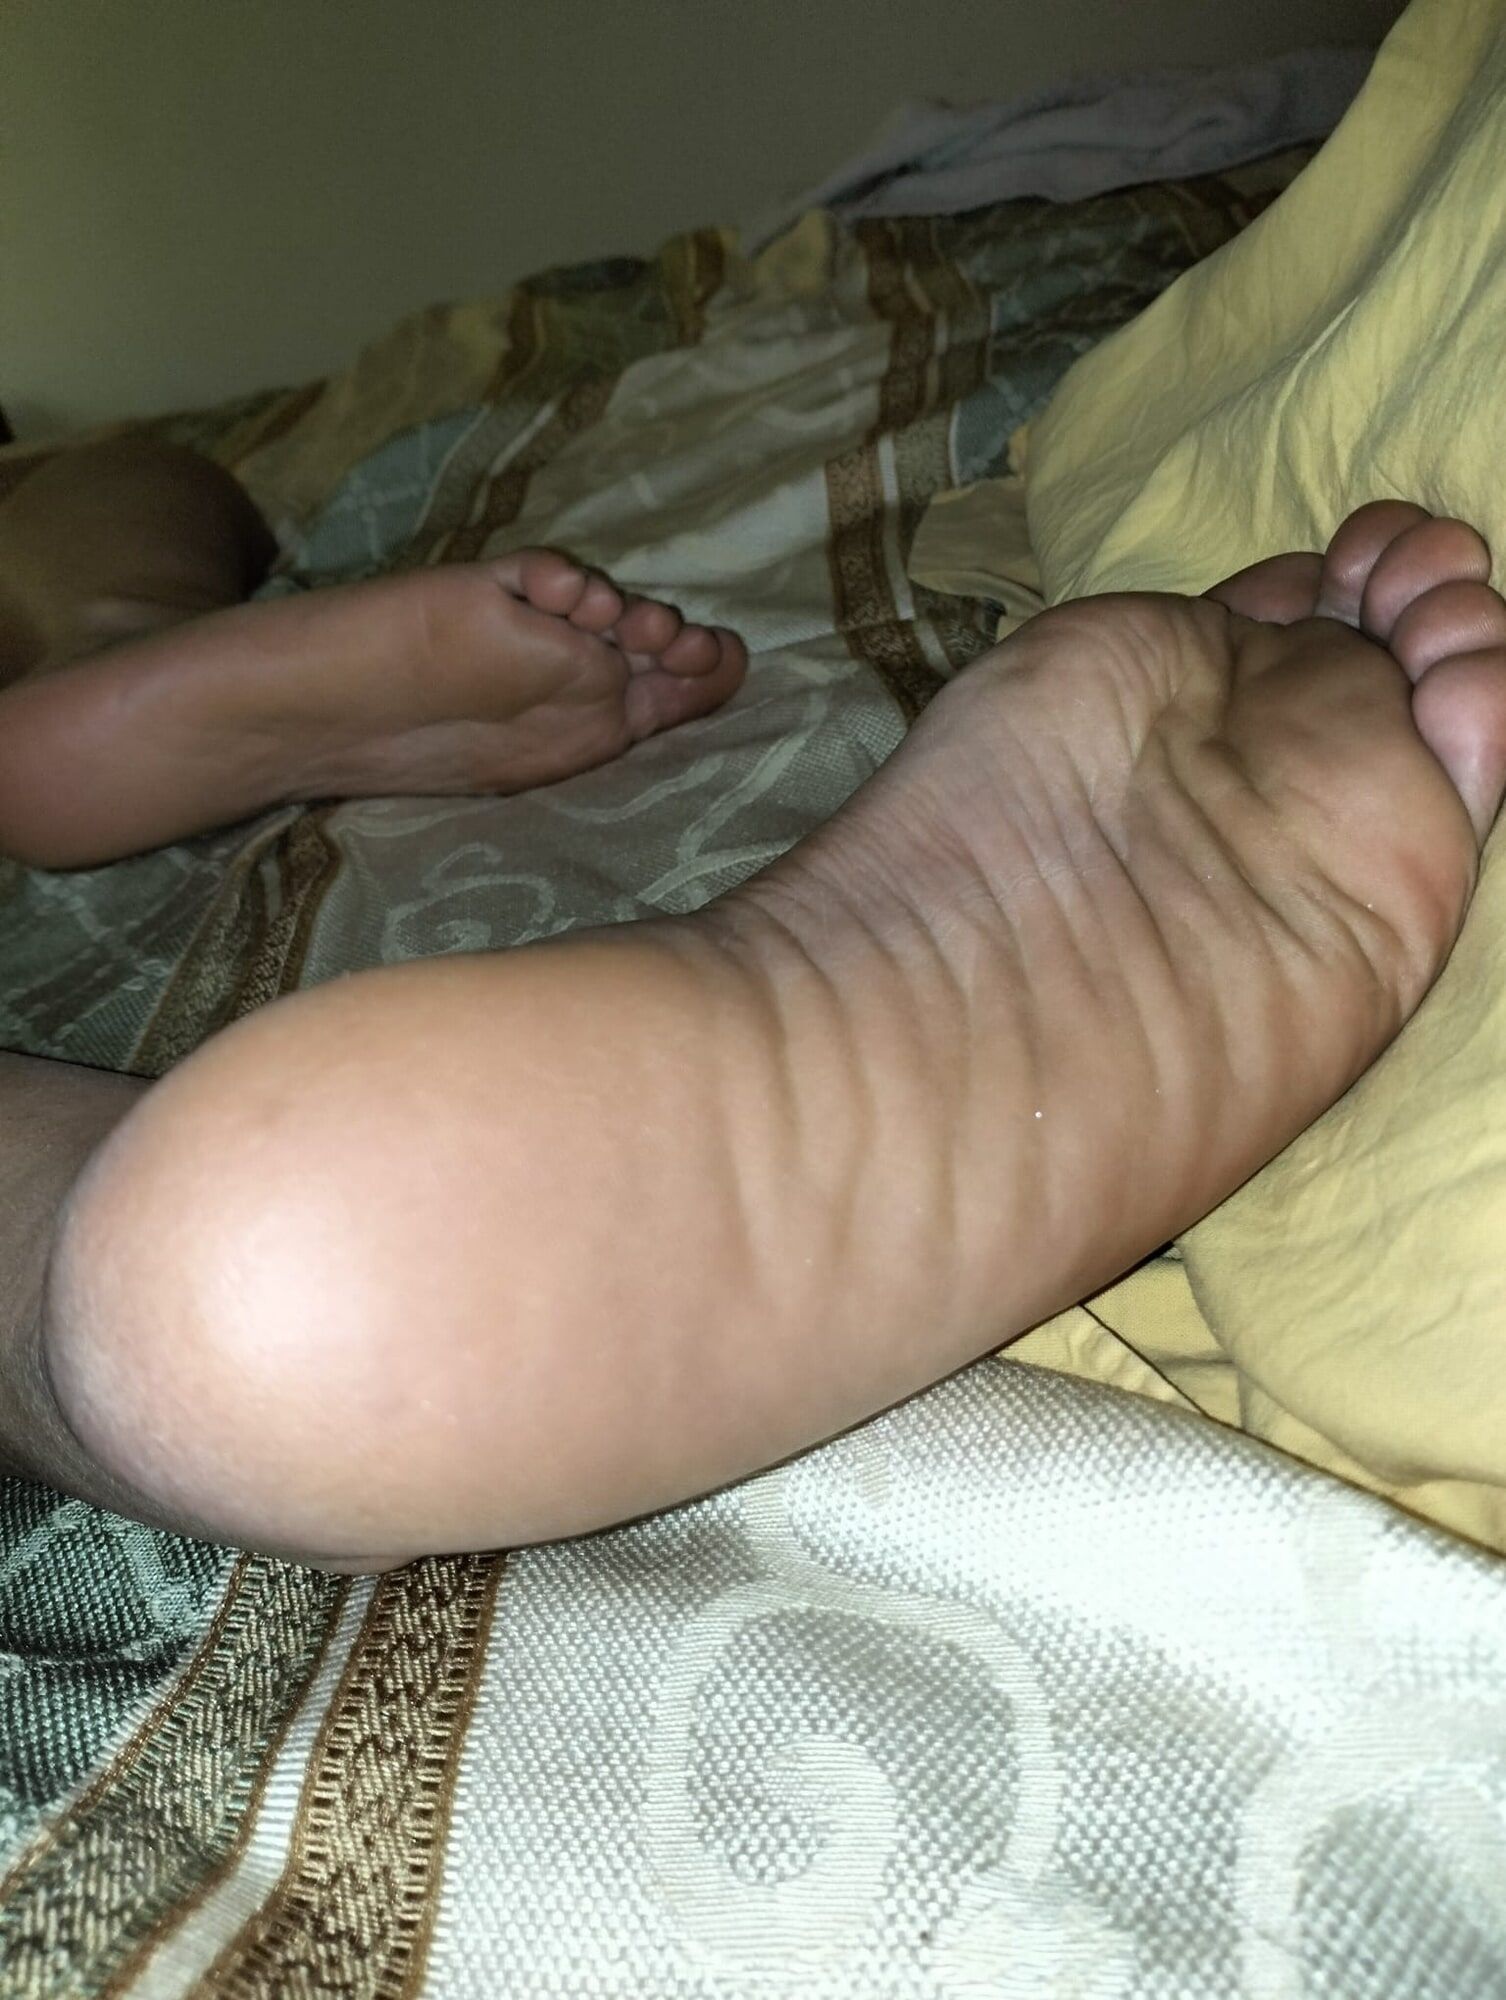 My sexy feet ❤️ #6